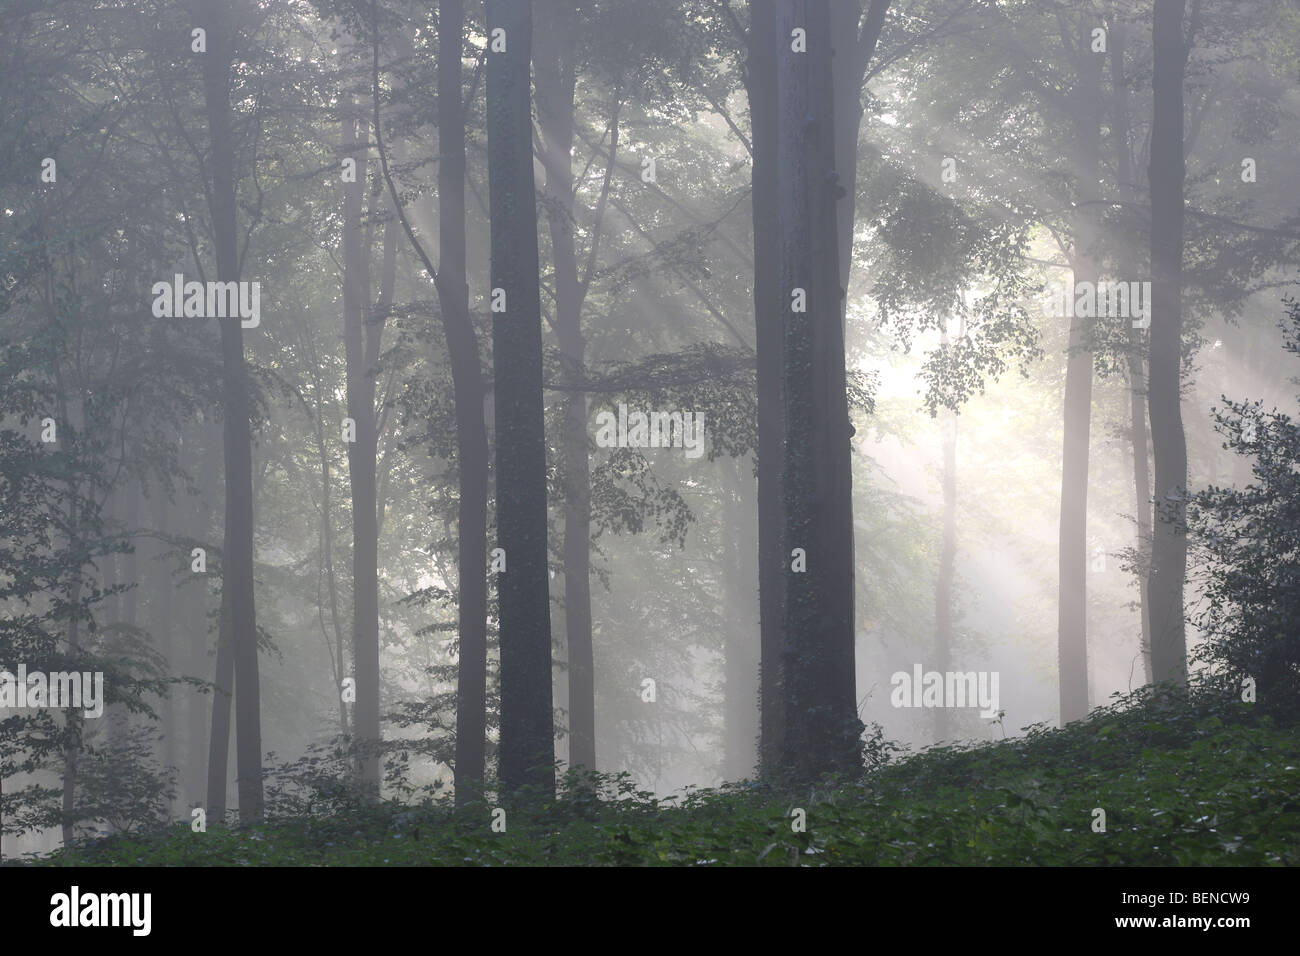 Forêt de hêtres (Fagus sylvatica) dans la brume, les Ardennes Flamandes, Belgique Banque D'Images